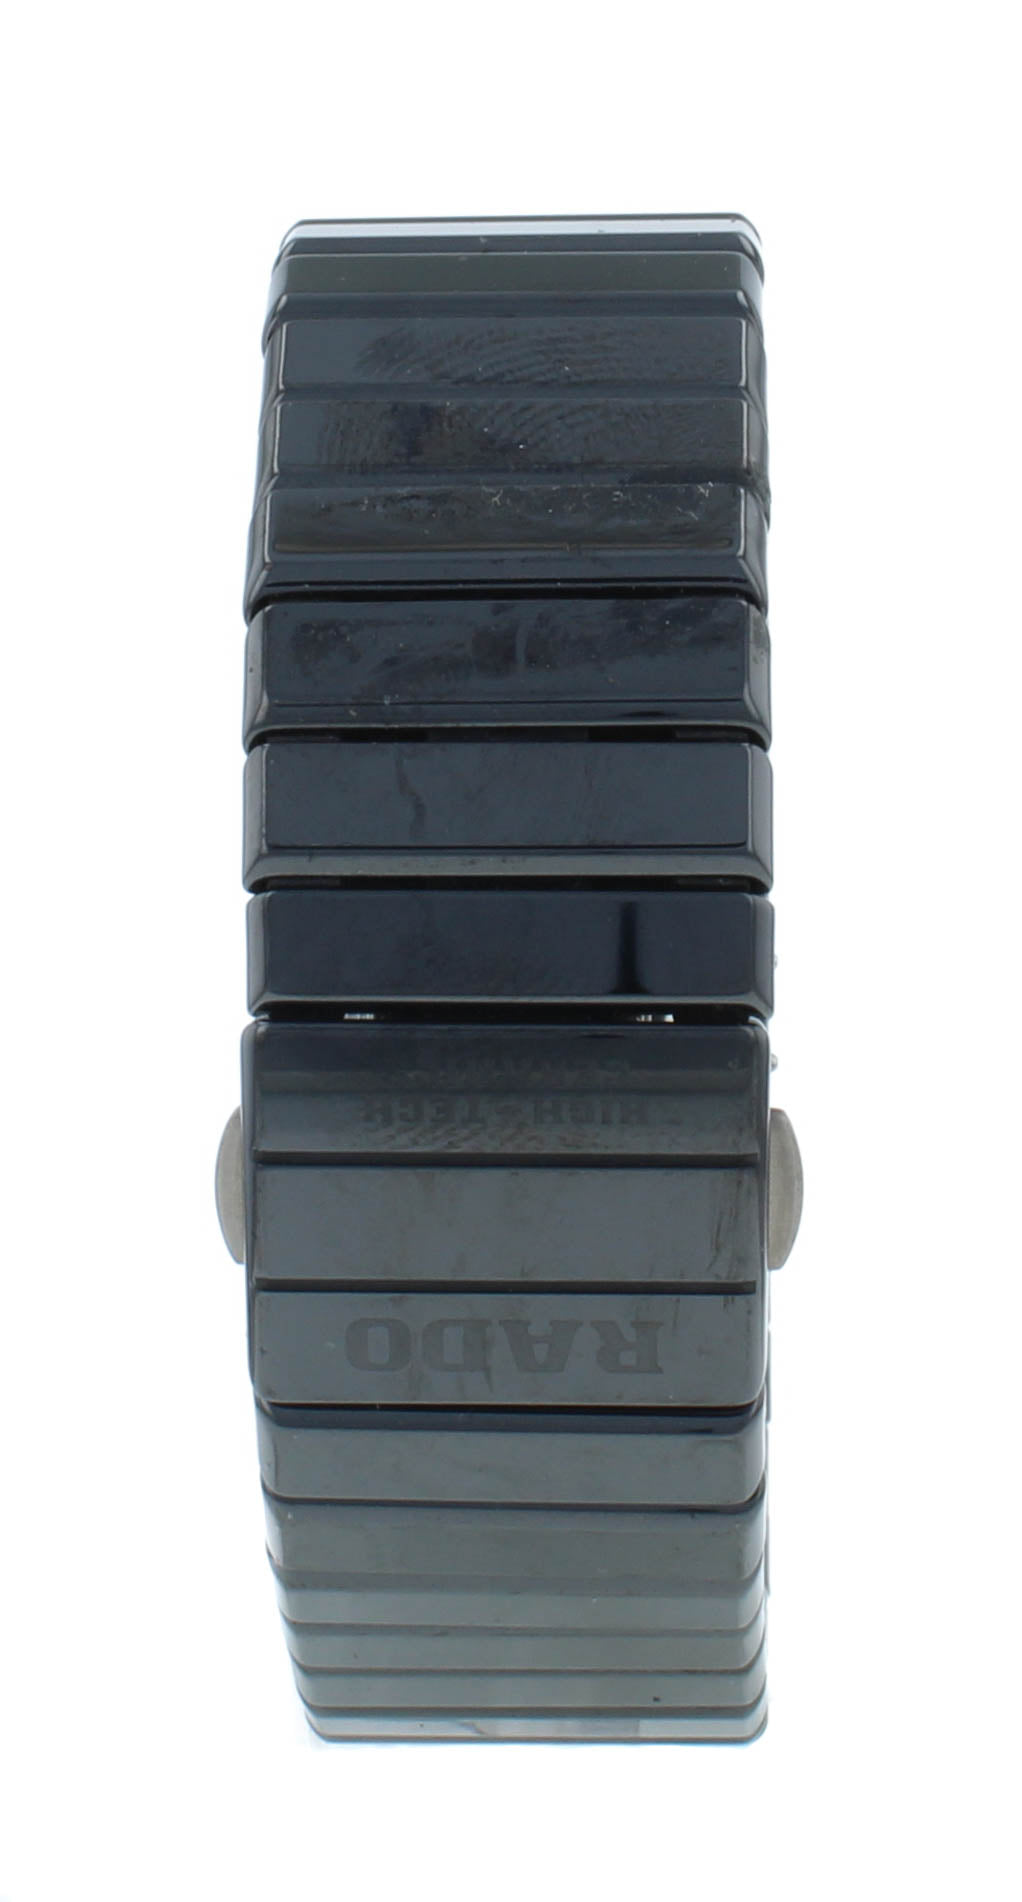 Rado Ceramica 19mm Ceramic Black Dial & Bracelet Quartz Ladies Watch R21540232